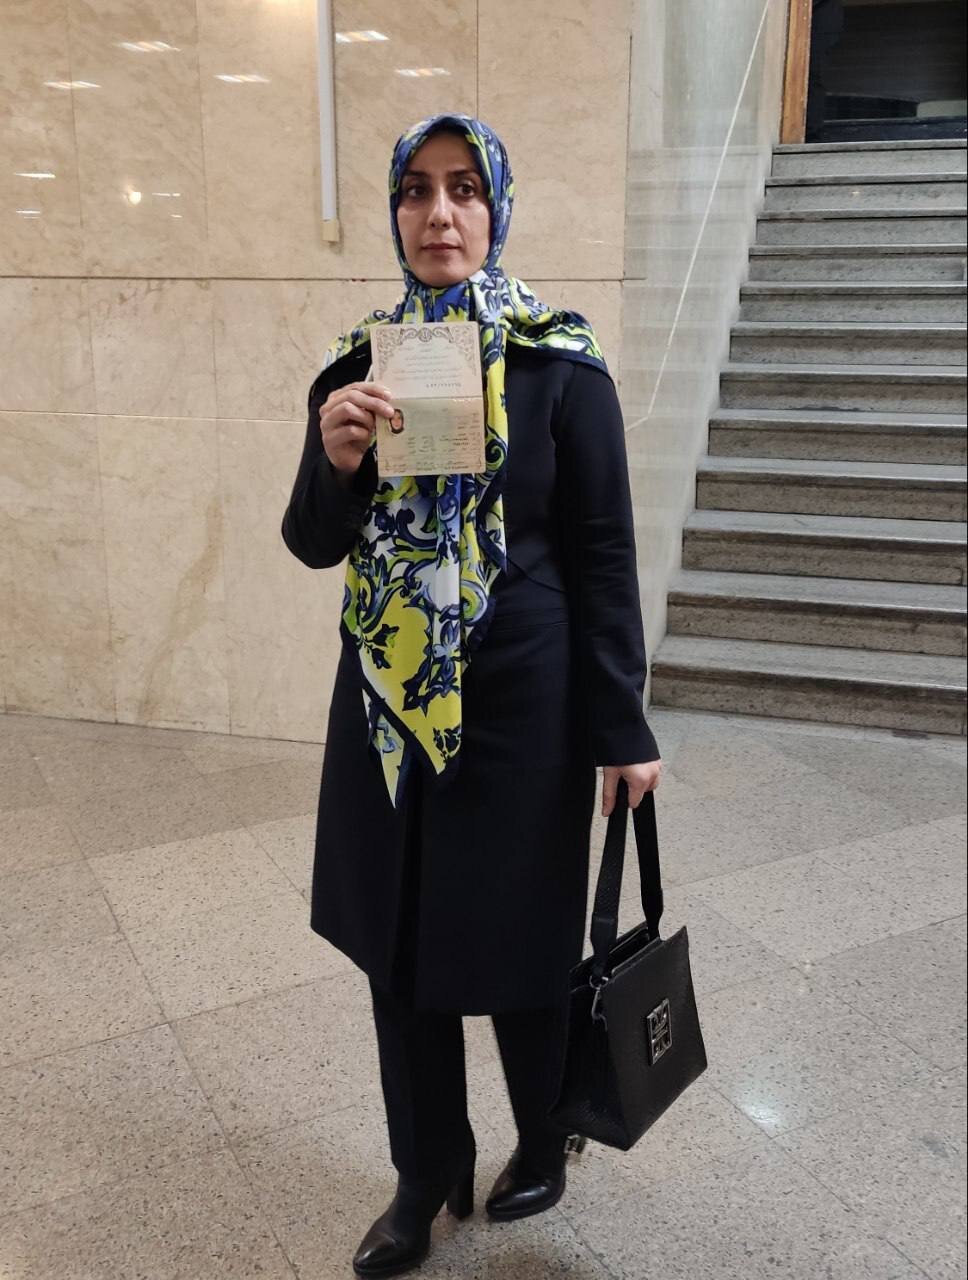 ثبت نام یک زن با مانتو برای انتخابات ریاست جمهوری حمیده زرآبادی نماینده قزوین در مجلس دهم